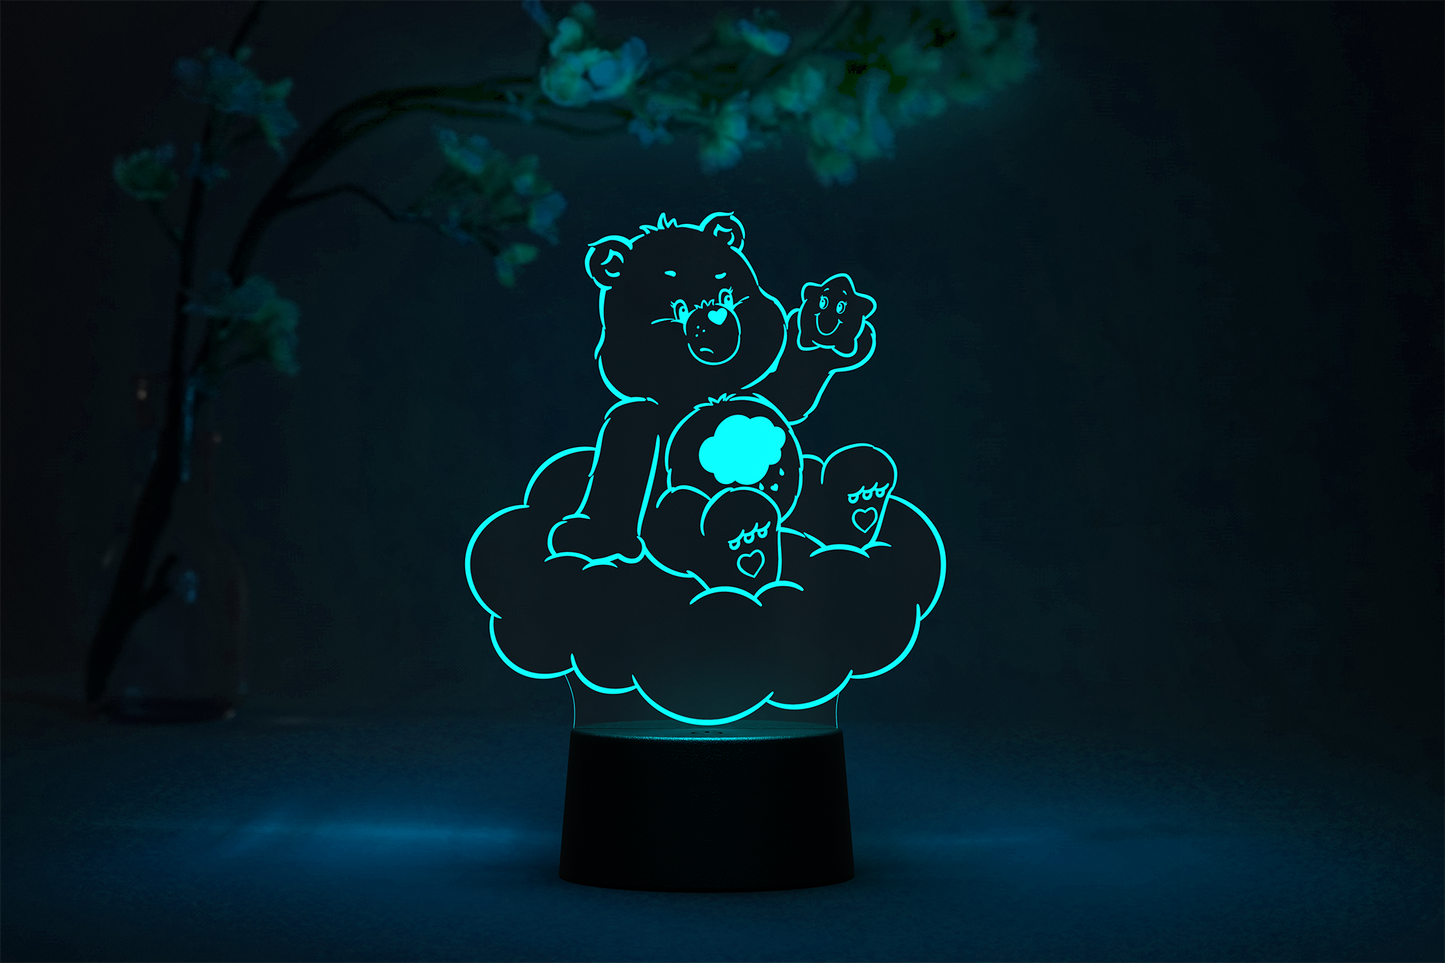 Otaku Lamps Care Bears - Grumpy Bear 2D LED Lamp